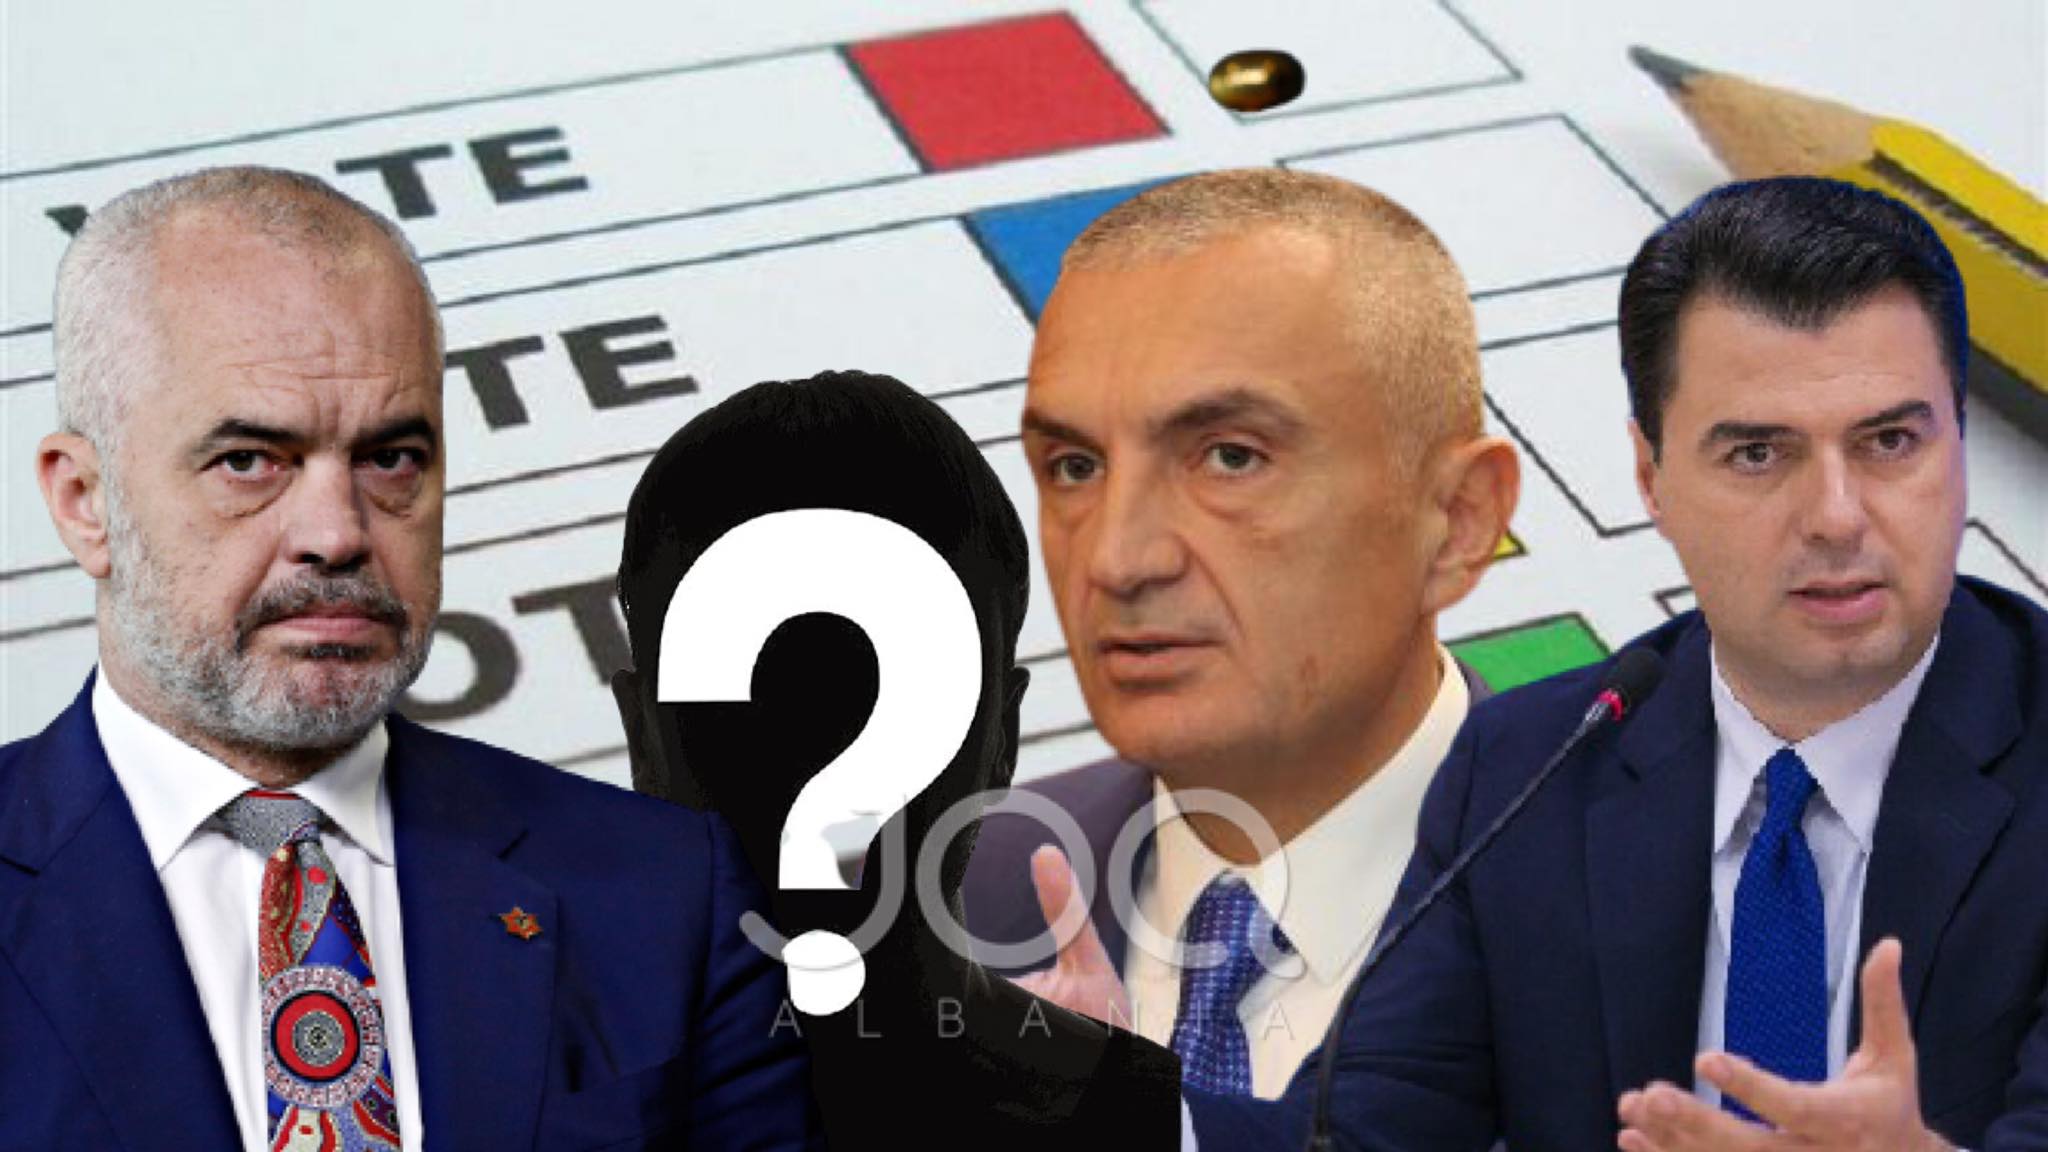 Sondazh nga JOQ Albania – Kë do votoni më 25 Prill?